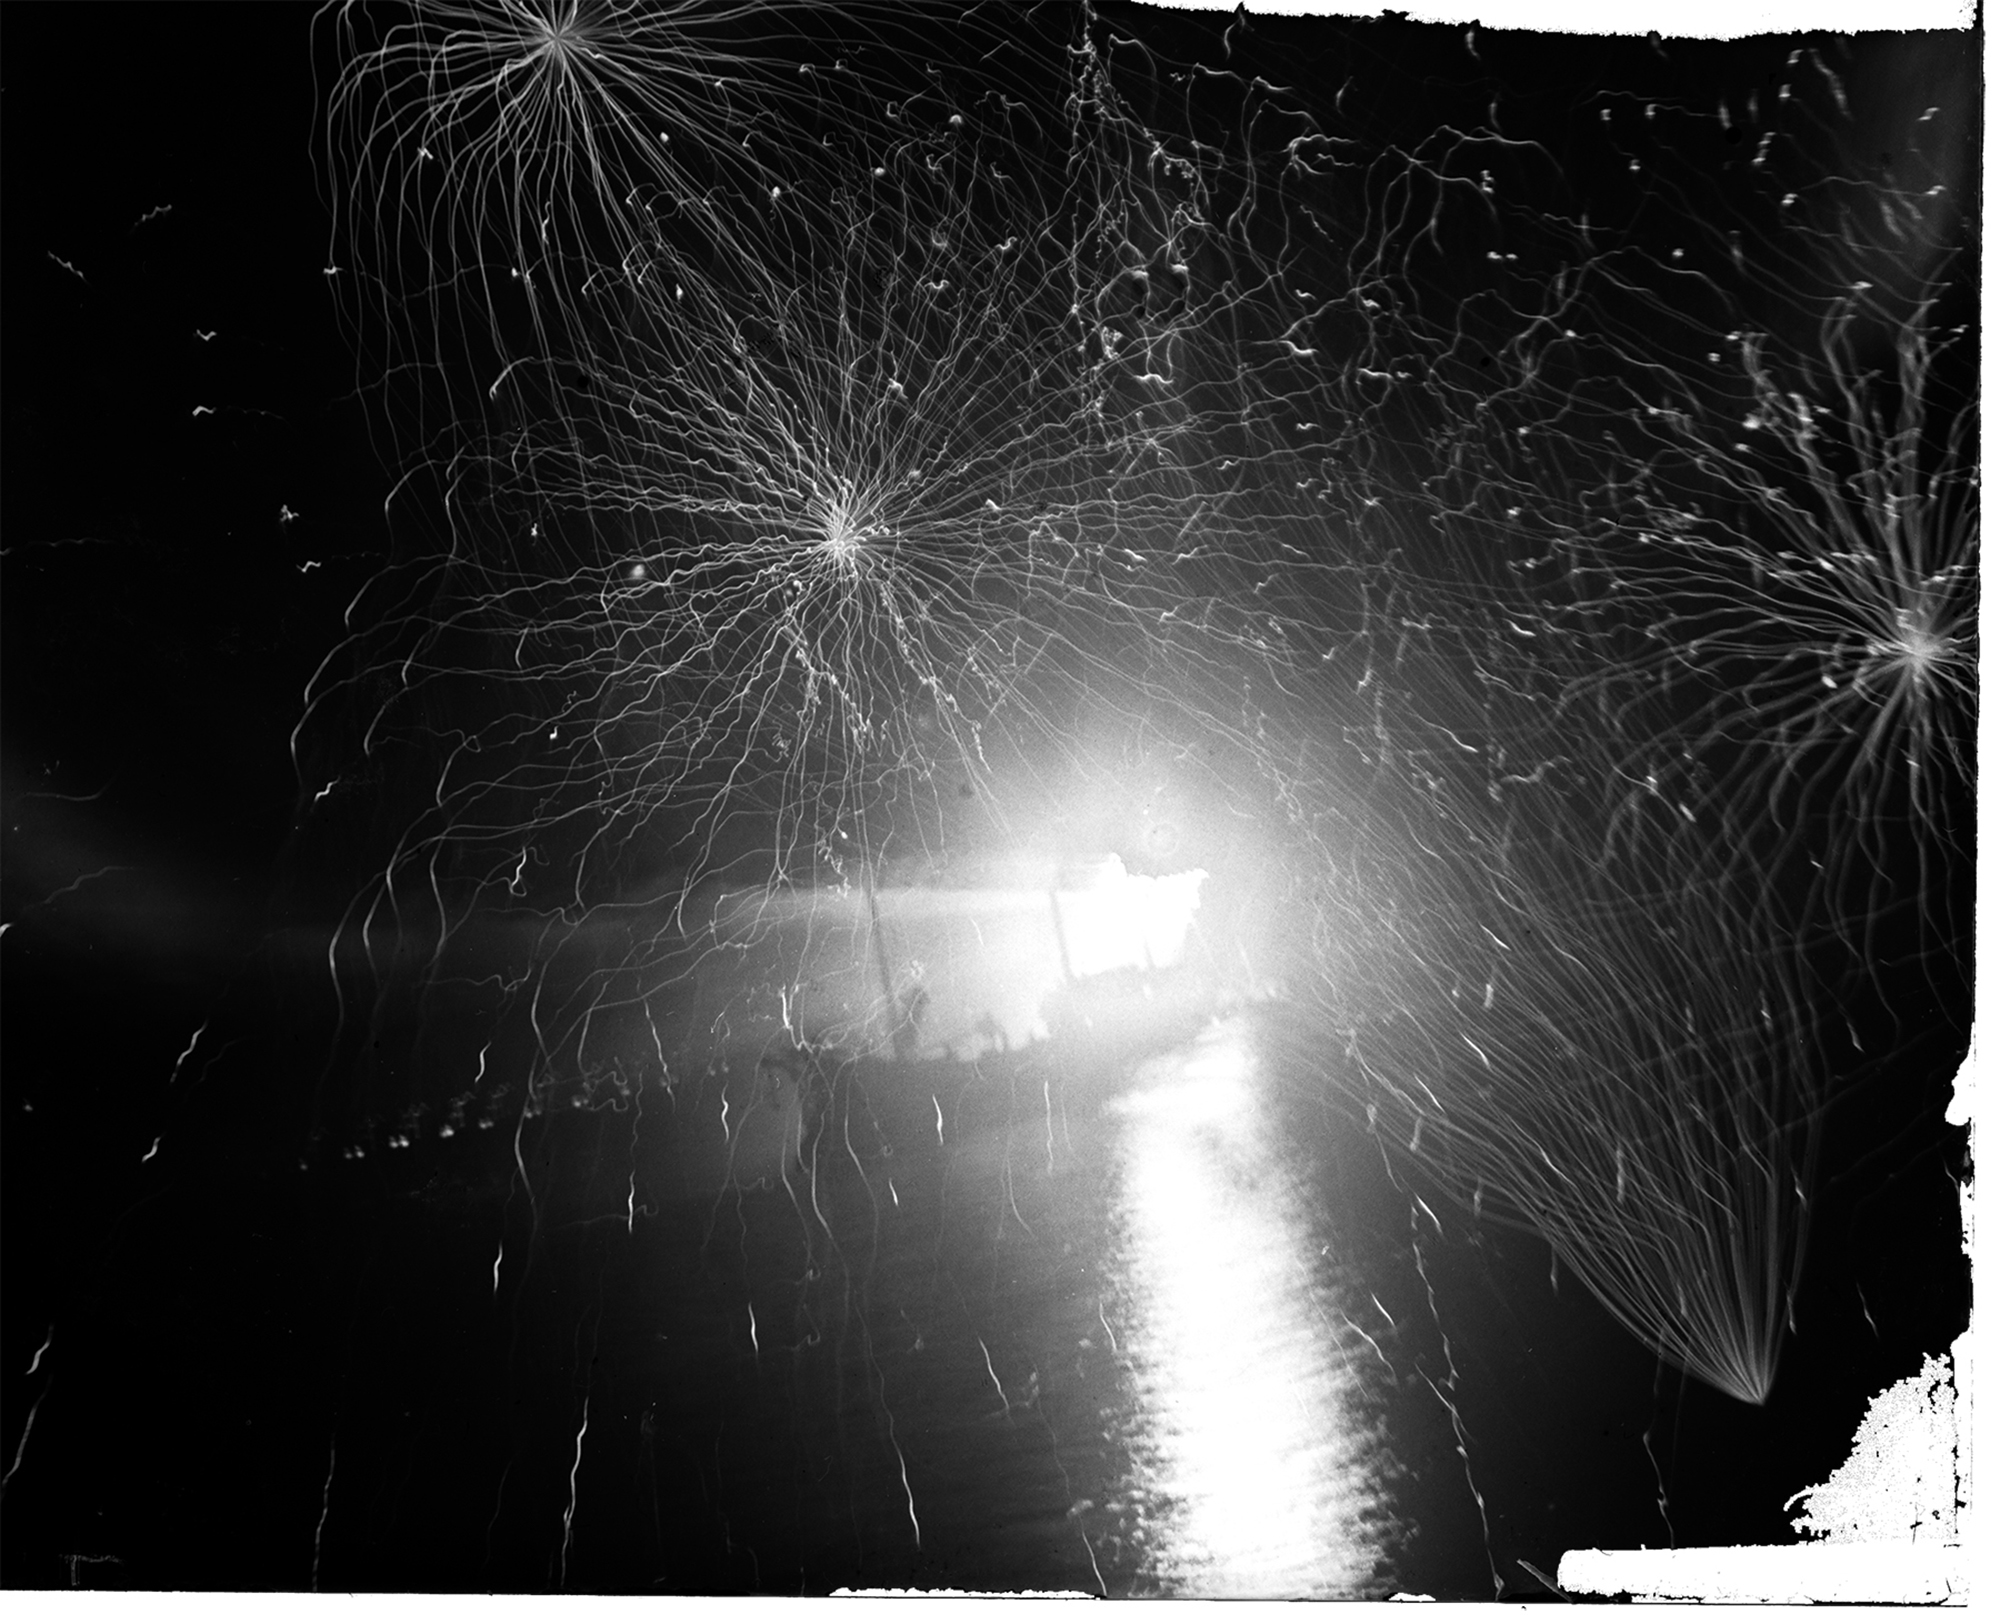 DISQUIET_Fireworks_Japan1930s_2022_ArchivalPigmentPrintOnKozoPaper_8x6.25in